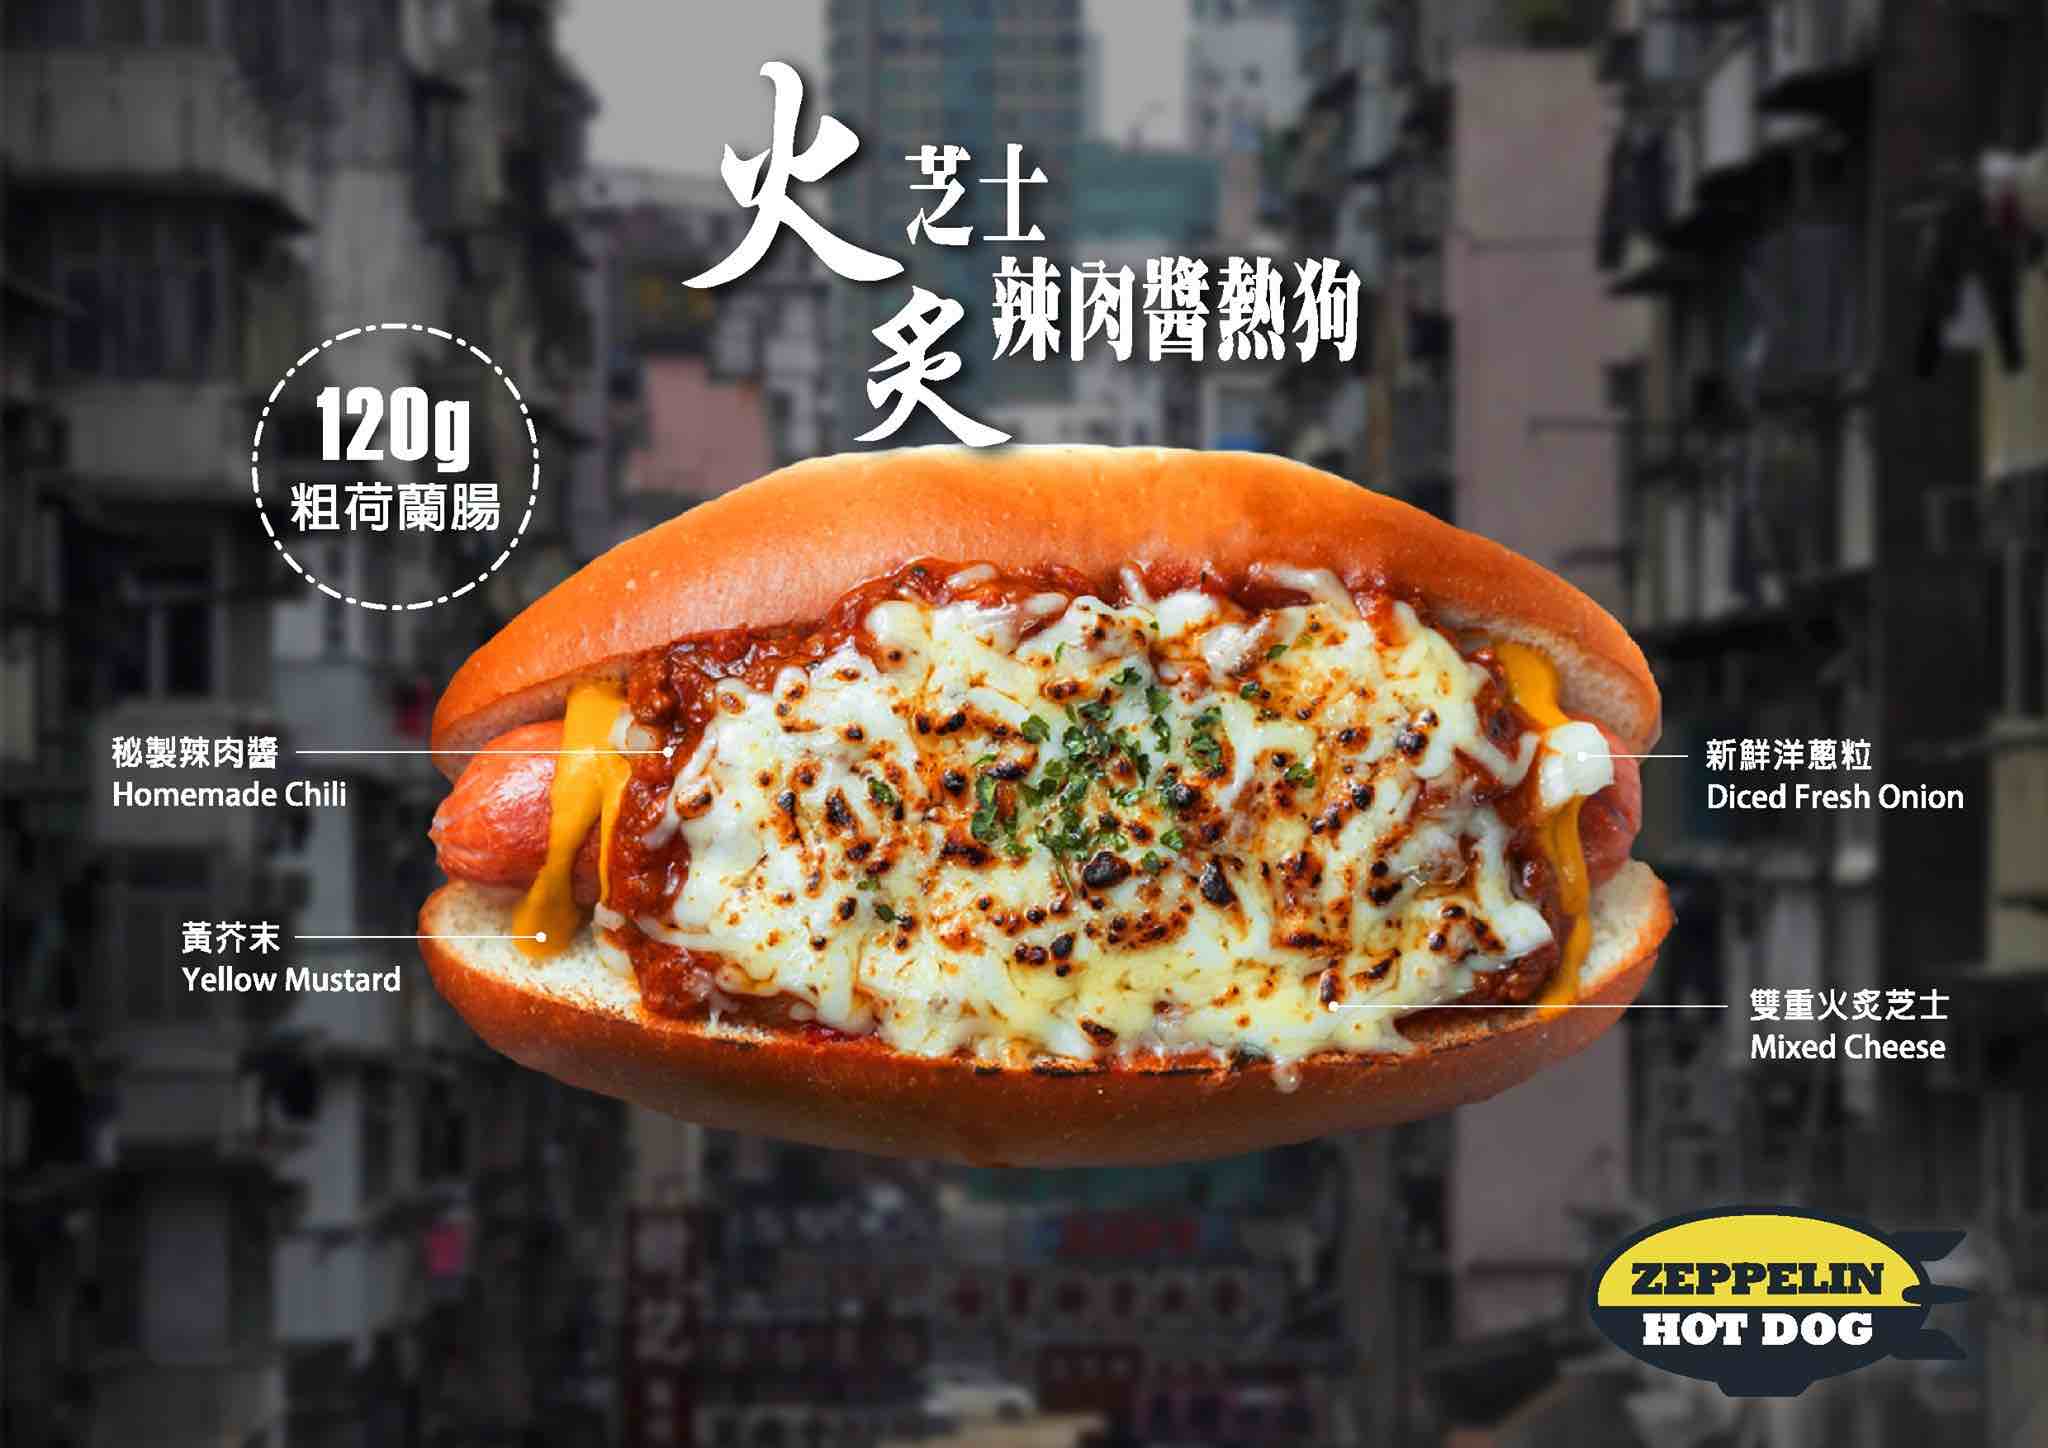 齊柏林熱狗 Zeppelin Hot Dog的特許經營香港區加盟店項目3